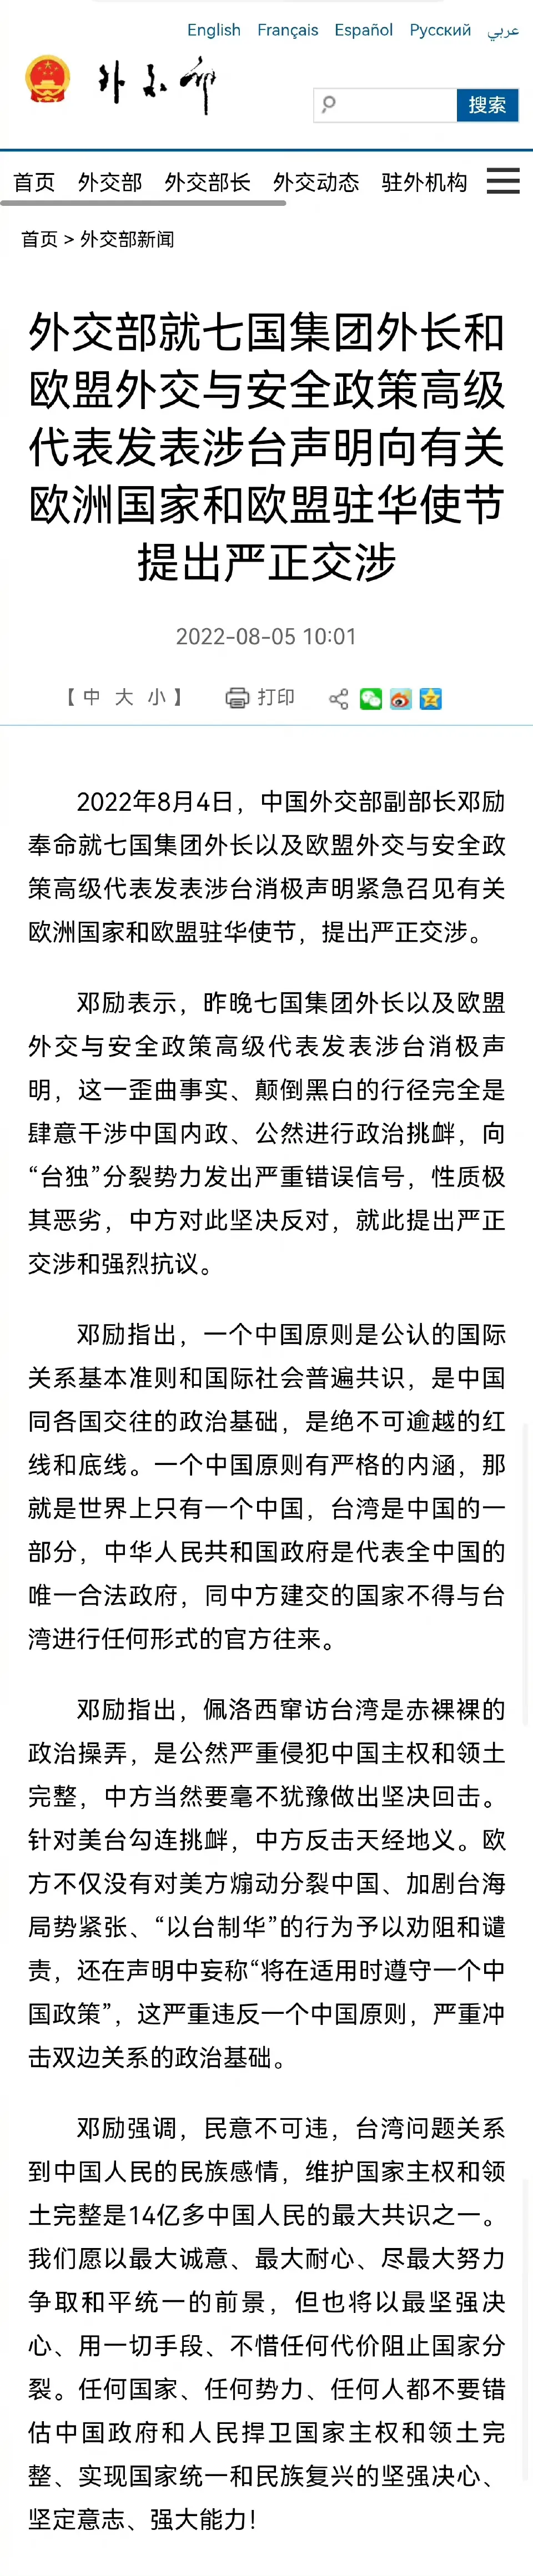 同中方建交国家不得与台湾官方往来 外交部:坚决反对建交国与台湾进行任何形式的官方往来